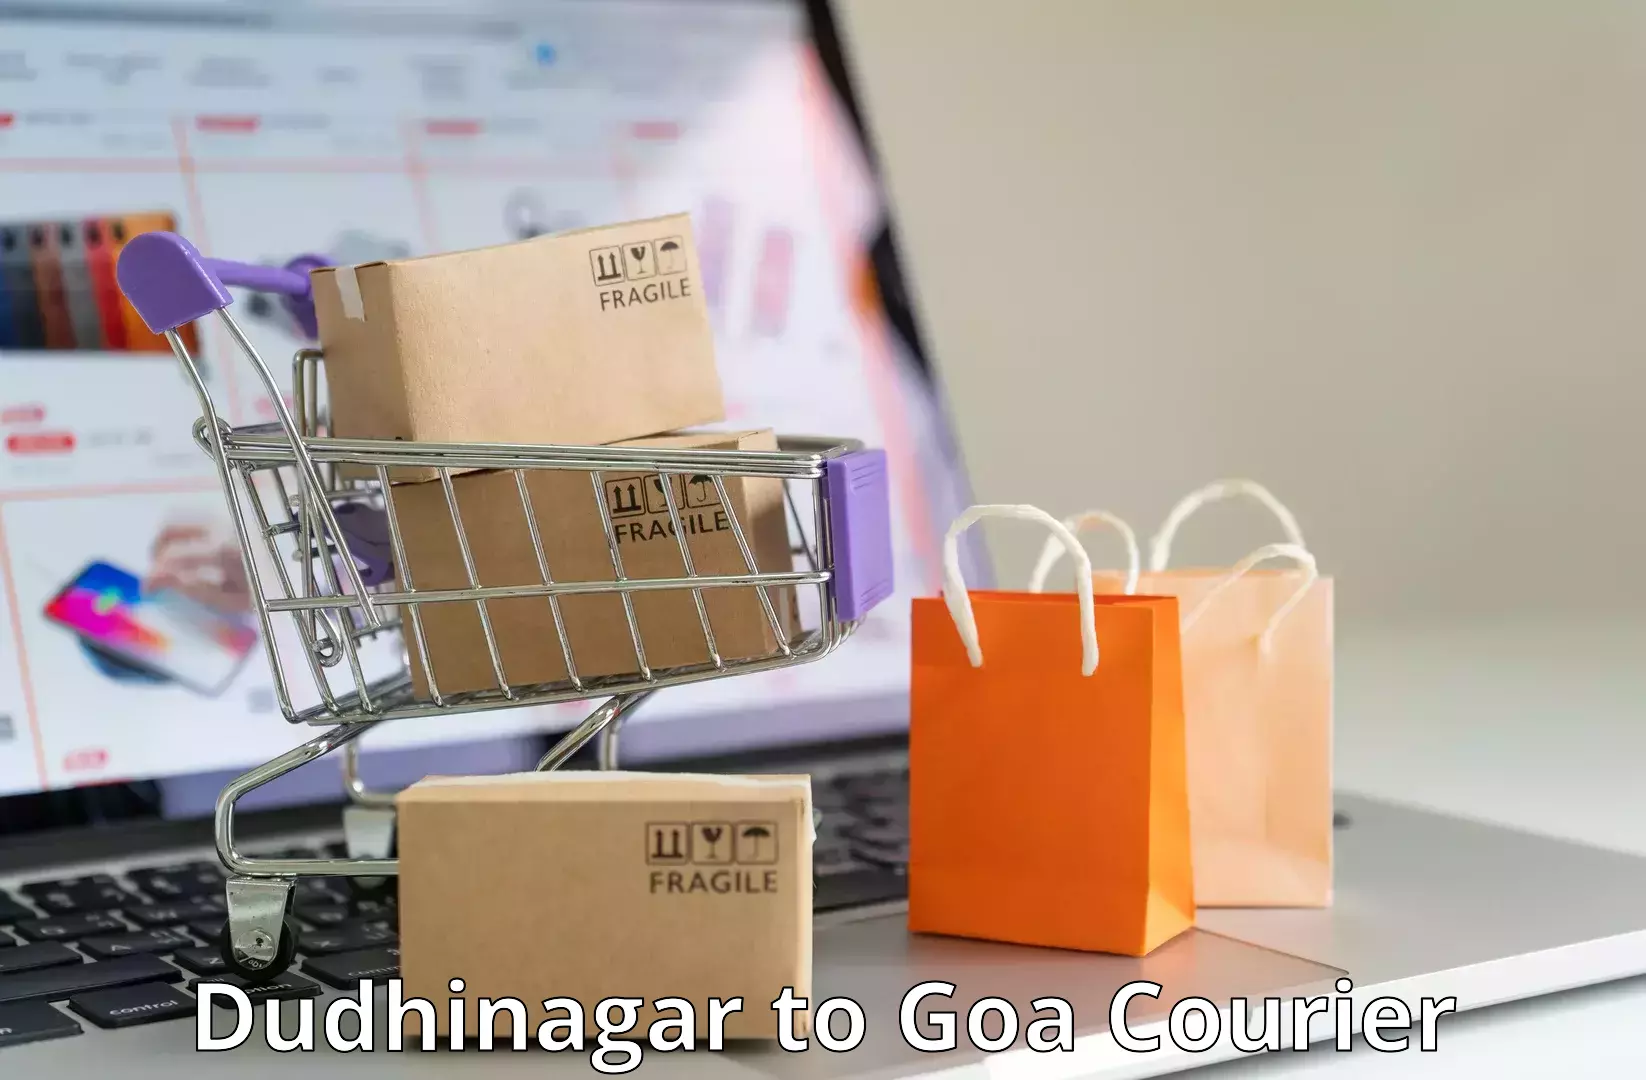 Bulk shipment Dudhinagar to Ponda